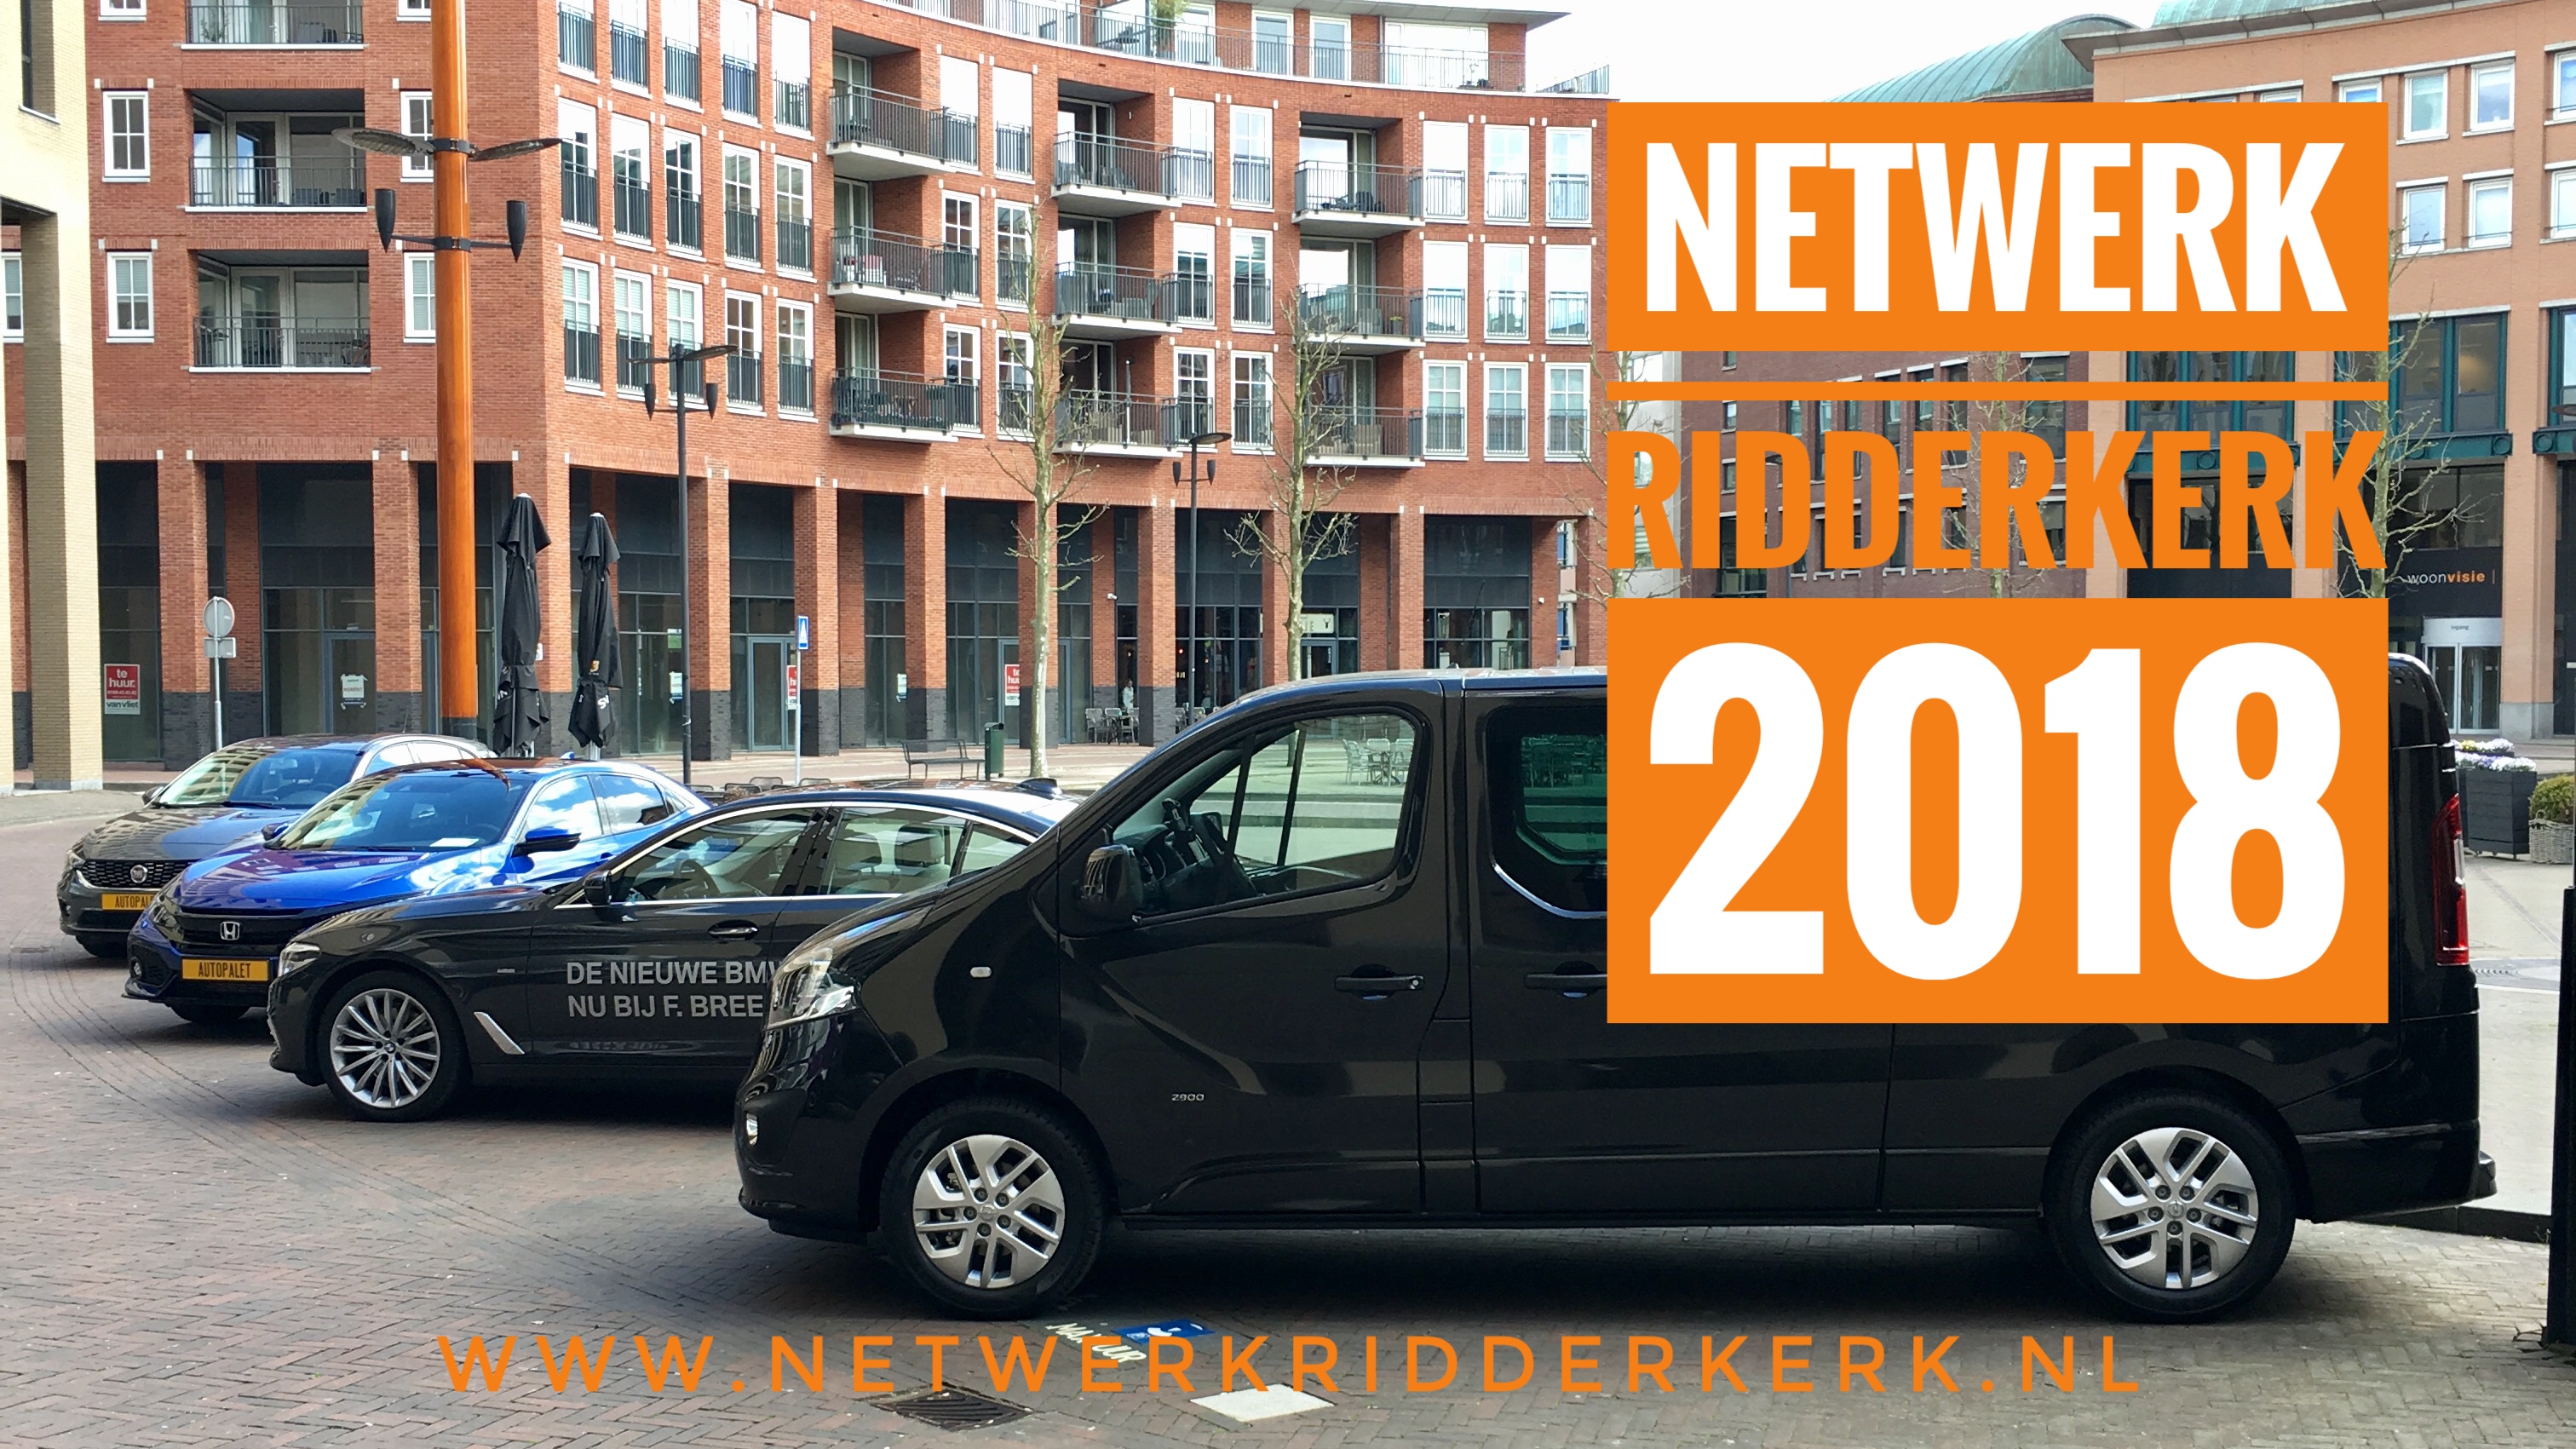 Netwerk Ridderkerk 2018